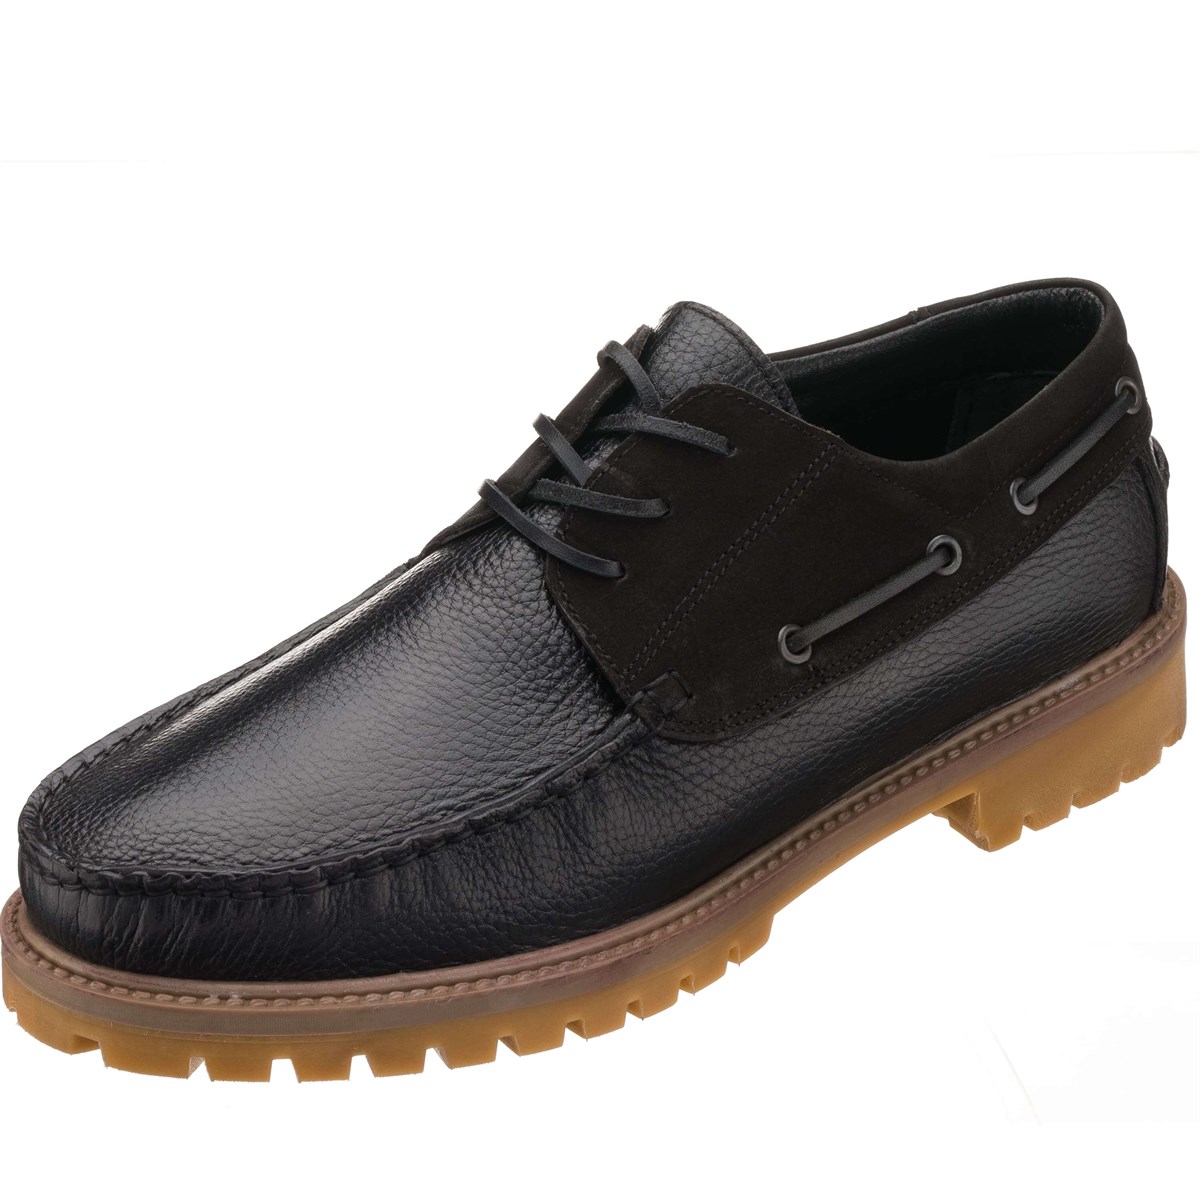 45-46-47-48-49 Numaralarda Siyah Tland Modeli Geniş Kalıp Büyük Numara  Erkek Ayakkabı